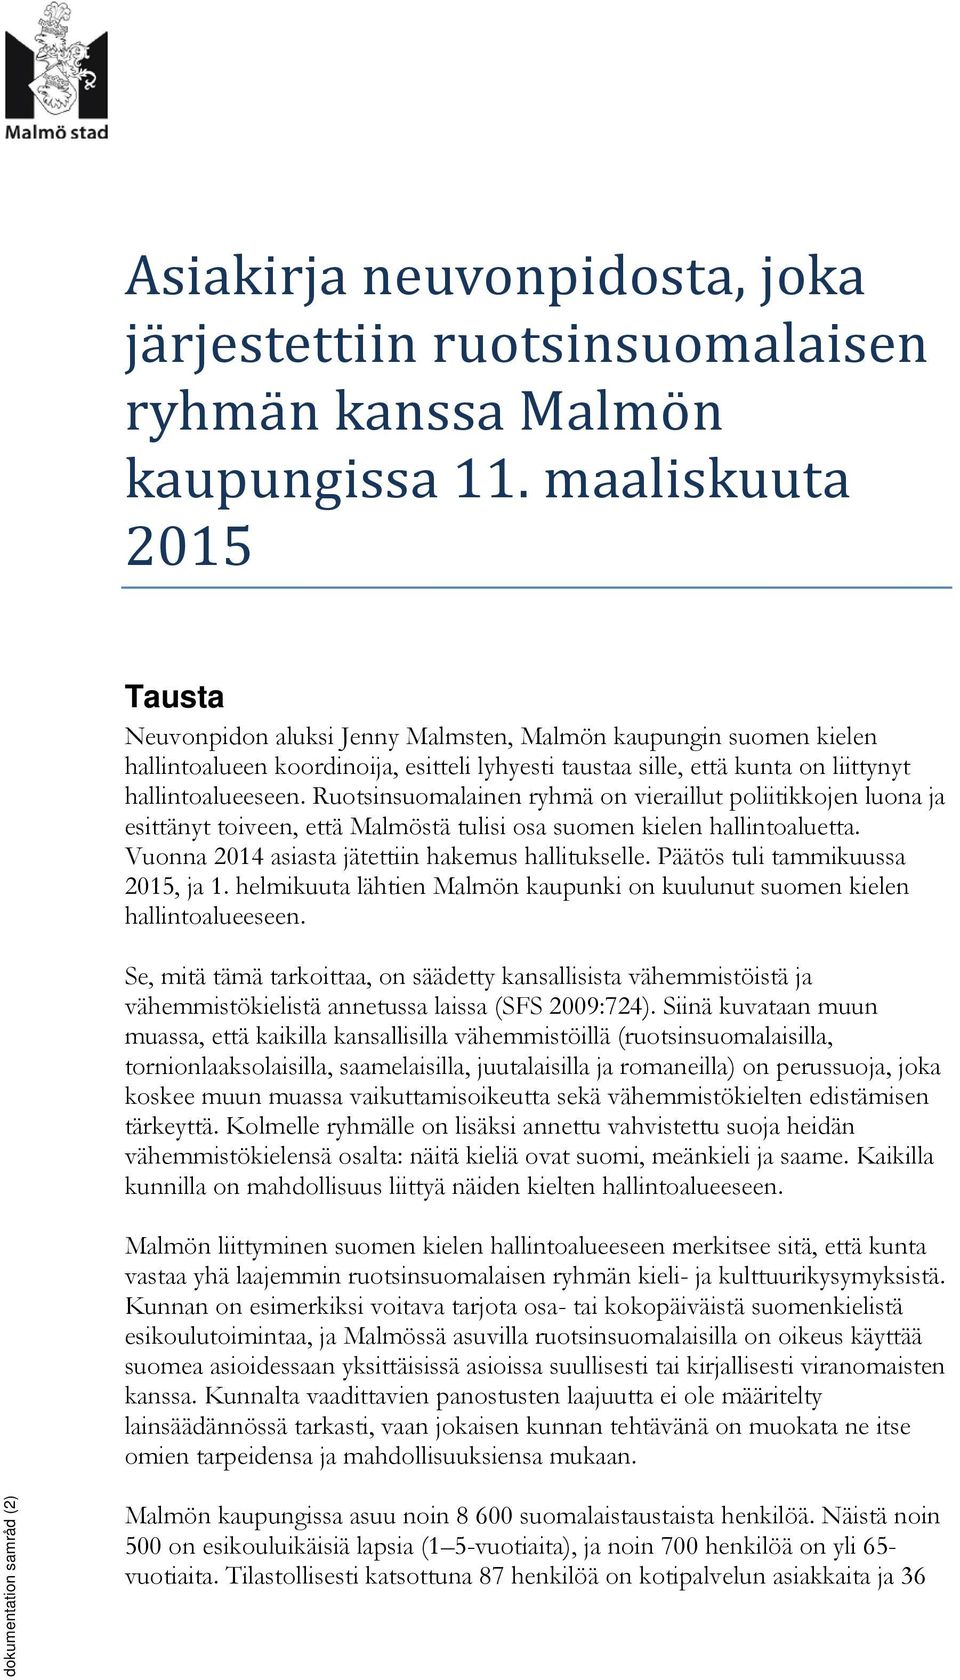 Ruotsinsuomalainen ryhmä on vieraillut poliitikkojen luona ja esittänyt toiveen, että Malmöstä tulisi osa suomen kielen hallintoaluetta. Vuonna 2014 asiasta jätettiin hakemus hallitukselle.